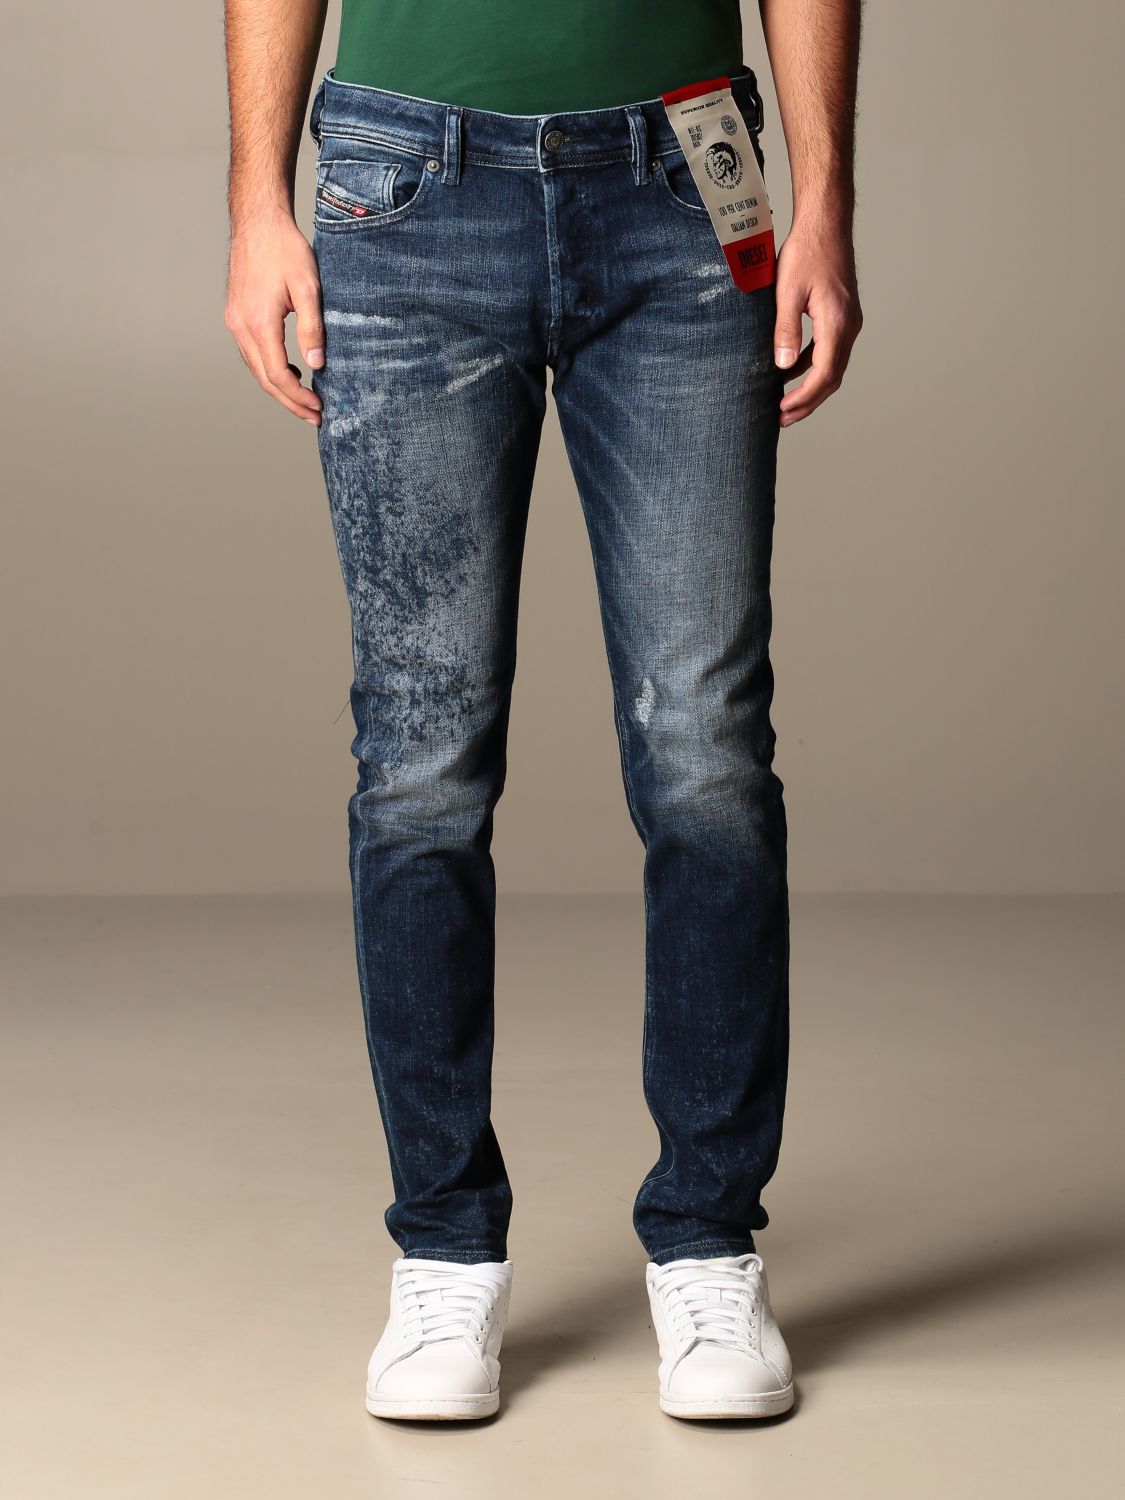 DIESEL: jeans in used denim with tears - Denim | Diesel jeans 00SWJE ...